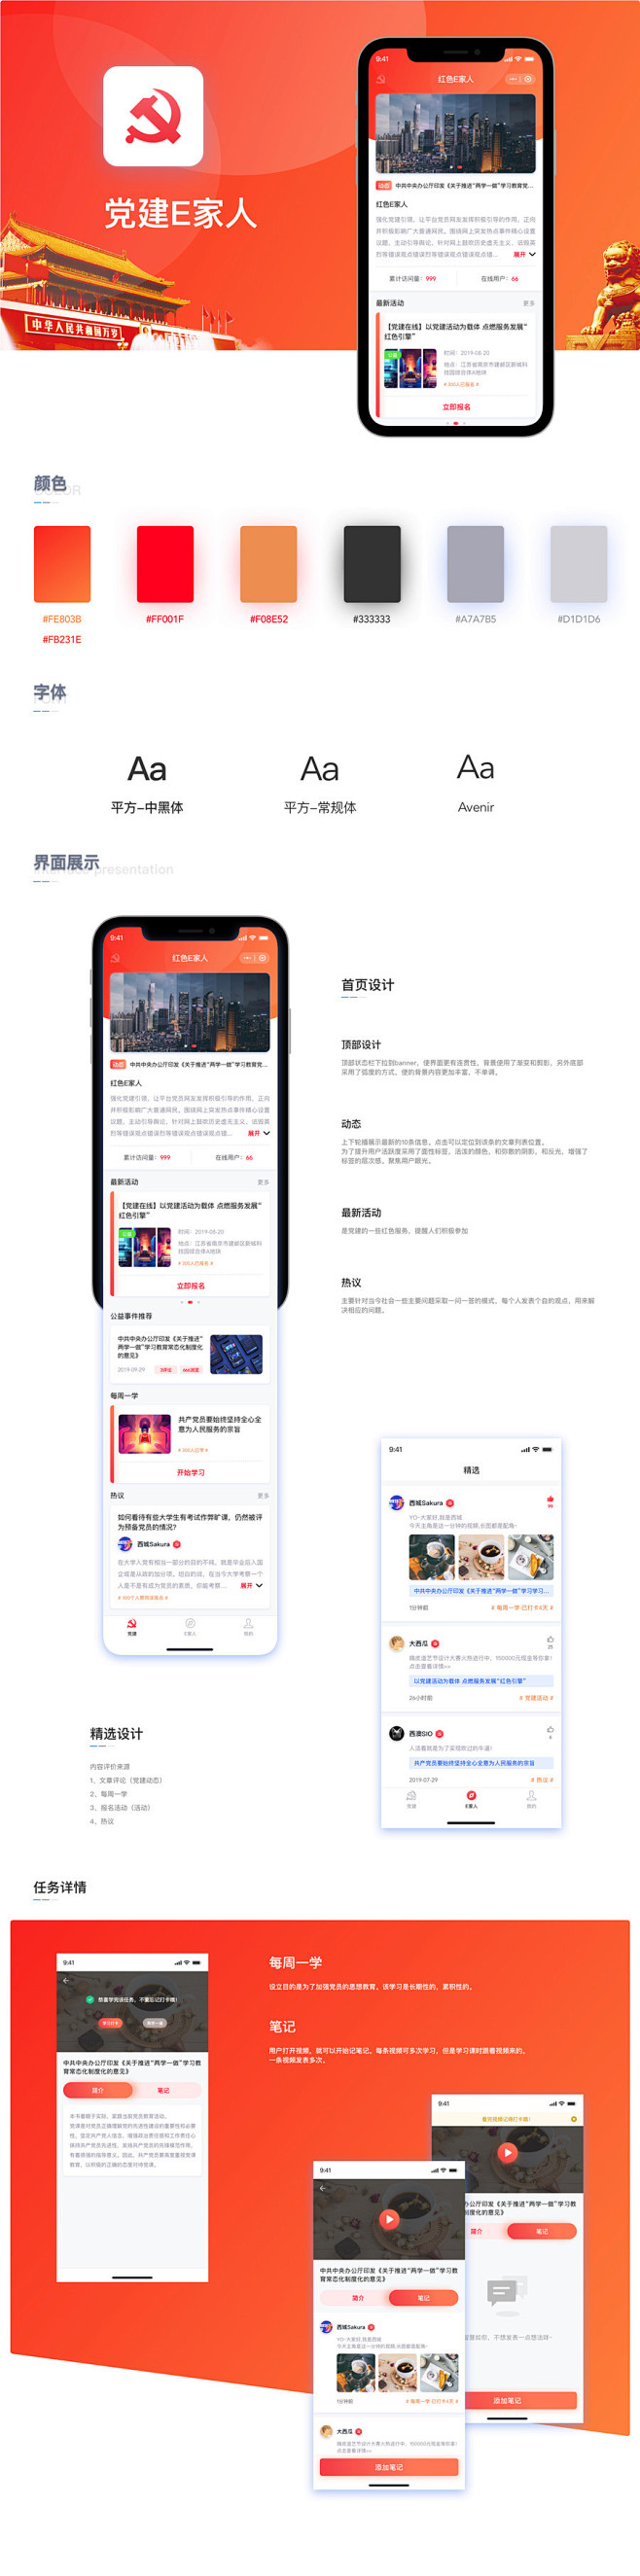 党建E家人-UI中国用户体验设计平台